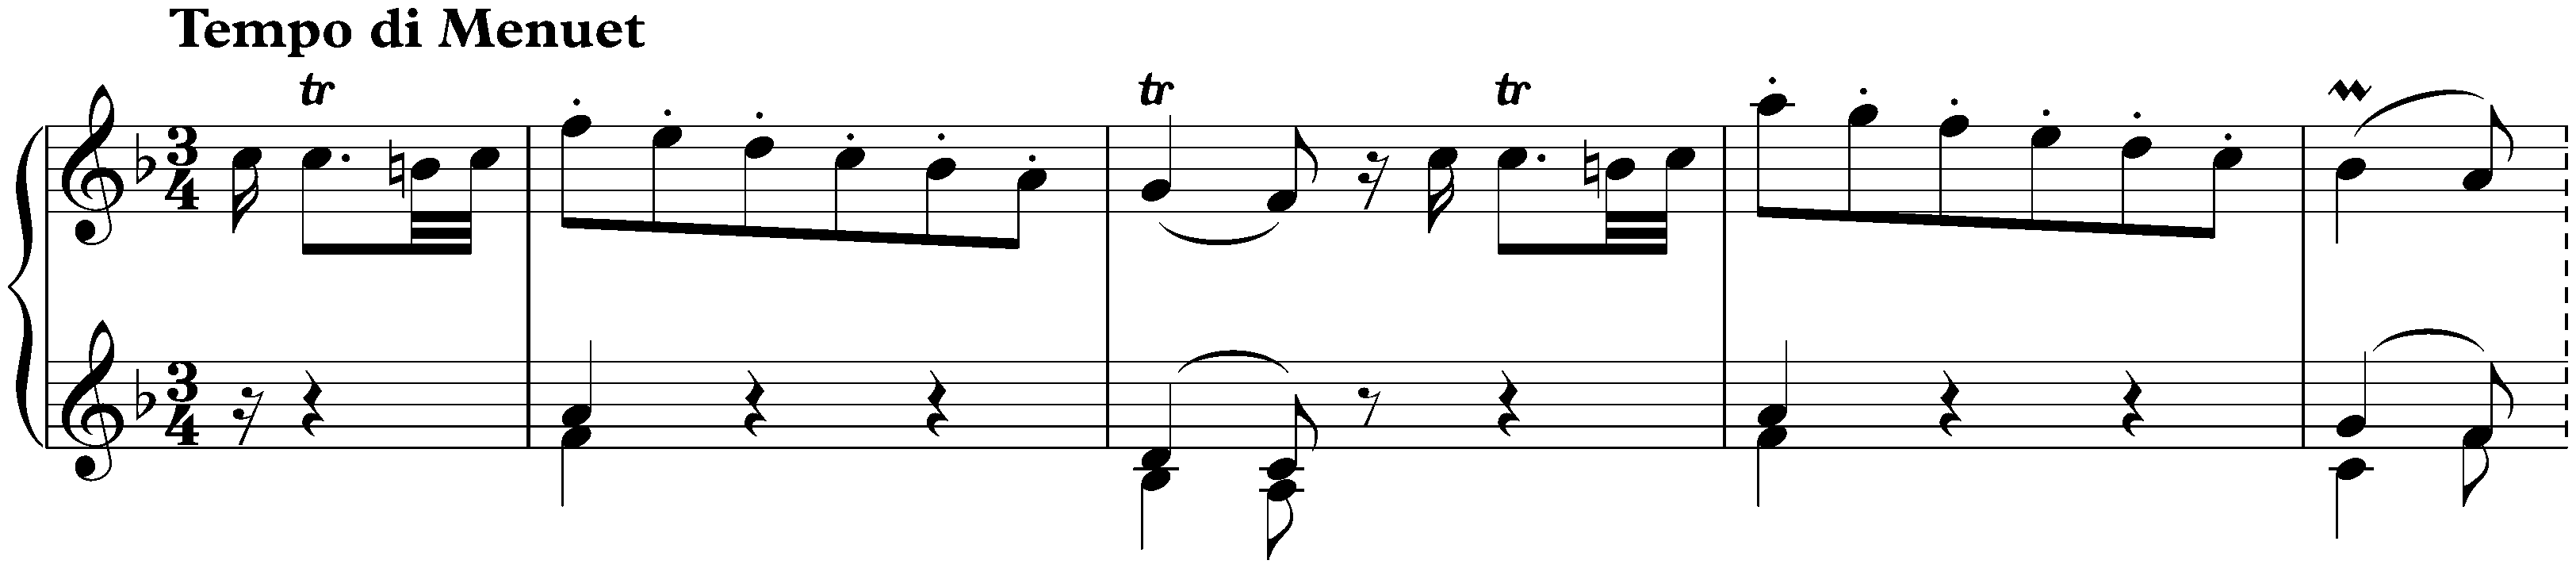 Sonata in F major, Hob. XVI:29; 3. Tempo di Menuet